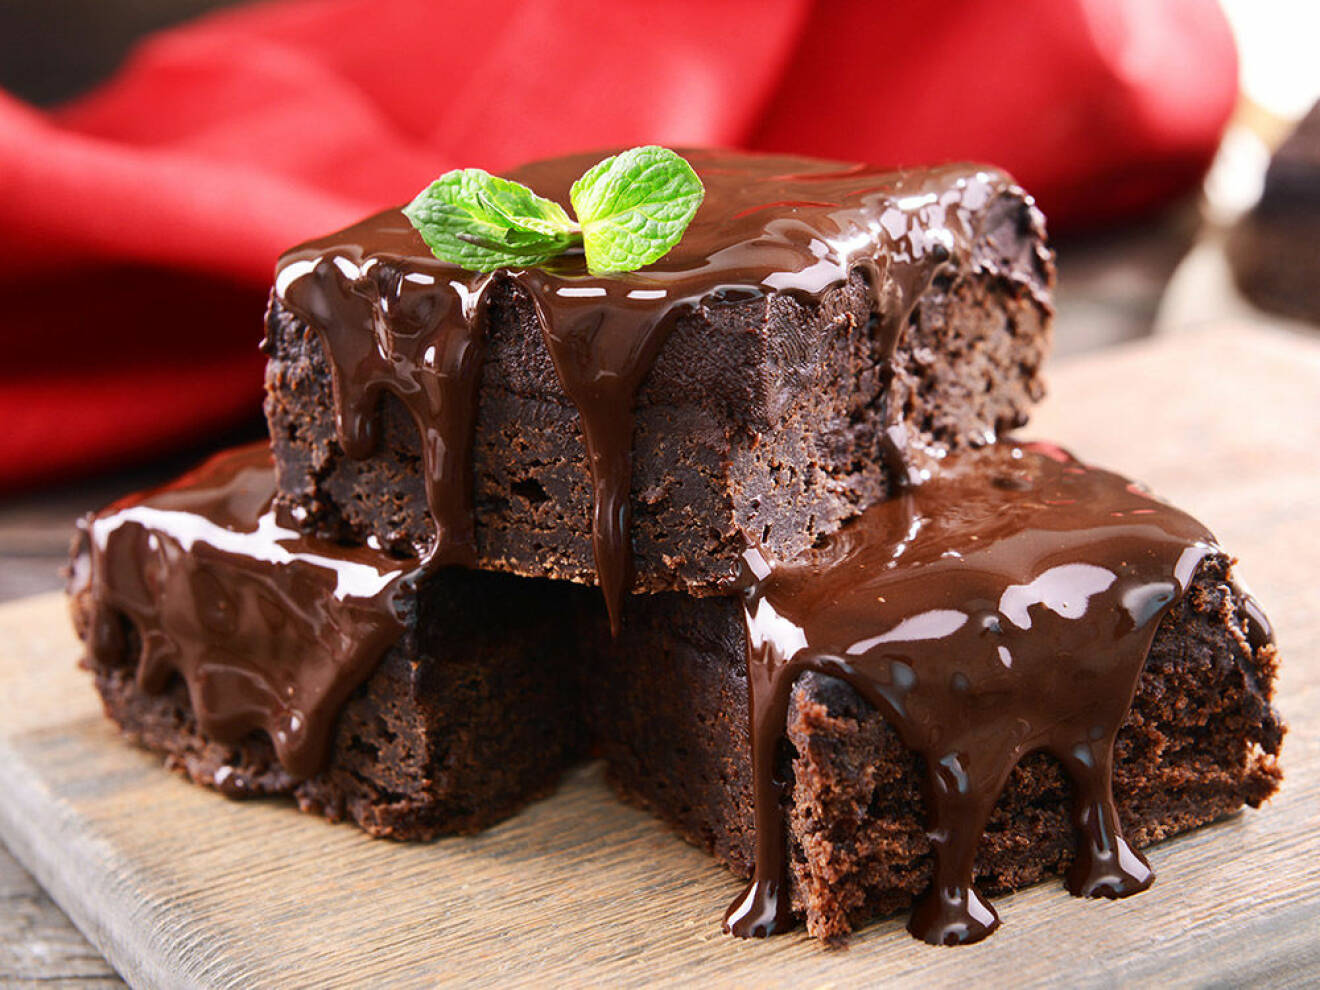 Unna dig en extra bit choklad när du har PMS! Foto: Shutterstock